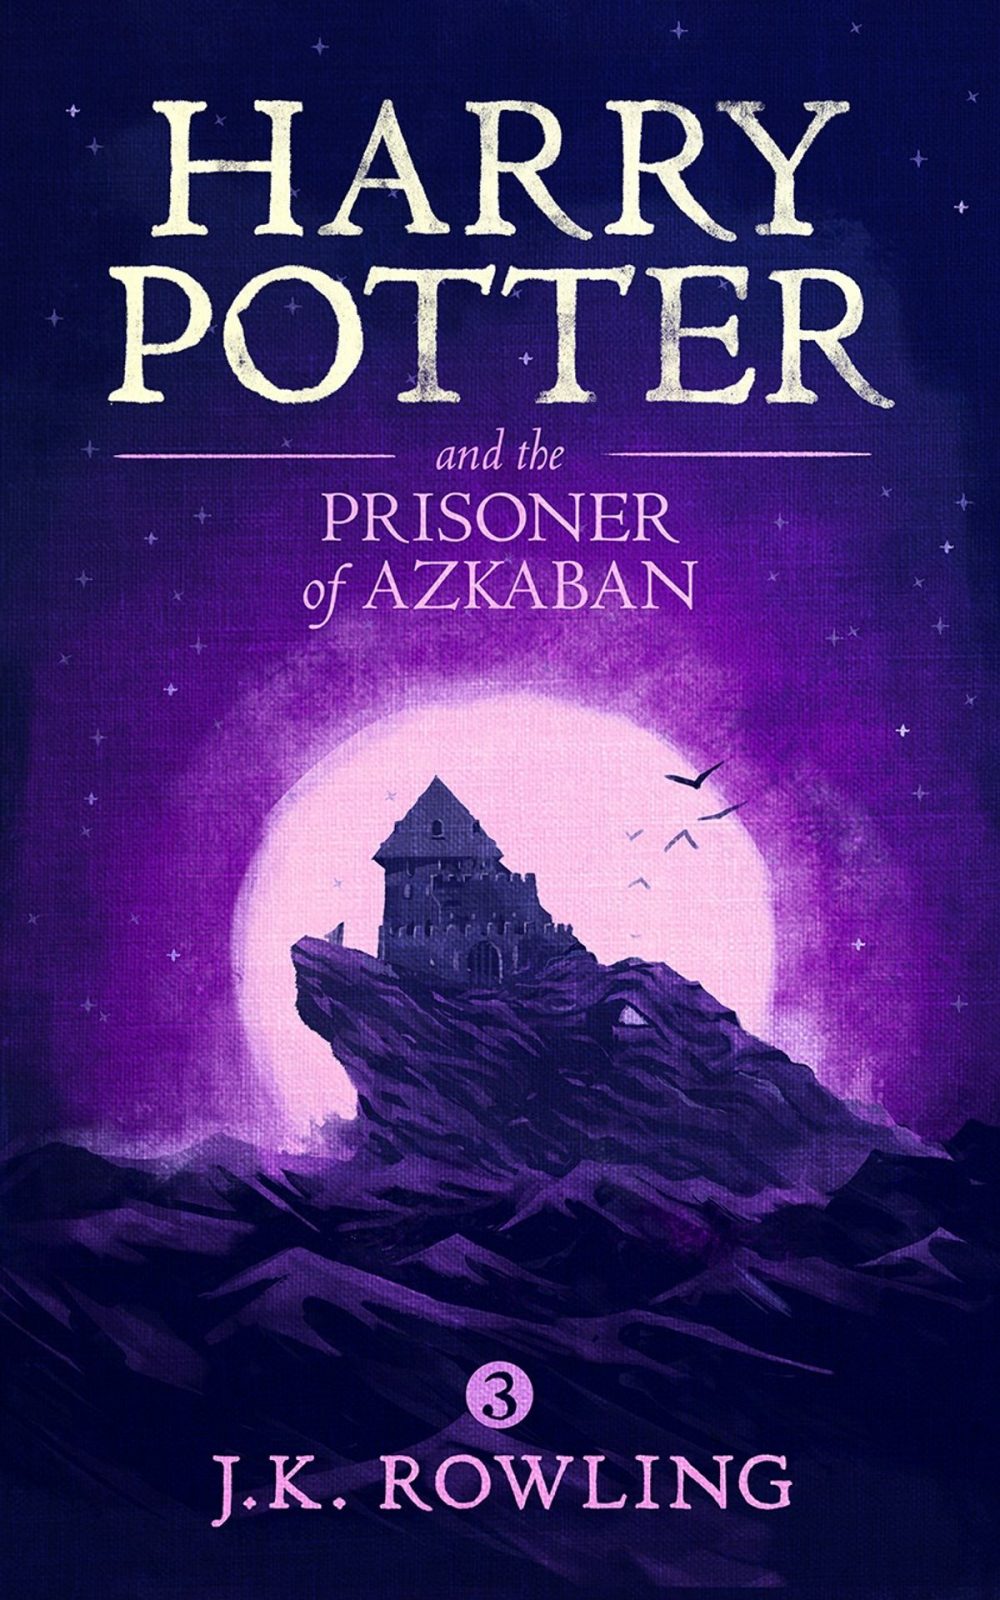 harry potter va ten tu nhan nguc azkaban anh e1588427418465 - Phiêu lưu cùng Harry Potter và tên tù nhân ngục Azkaban